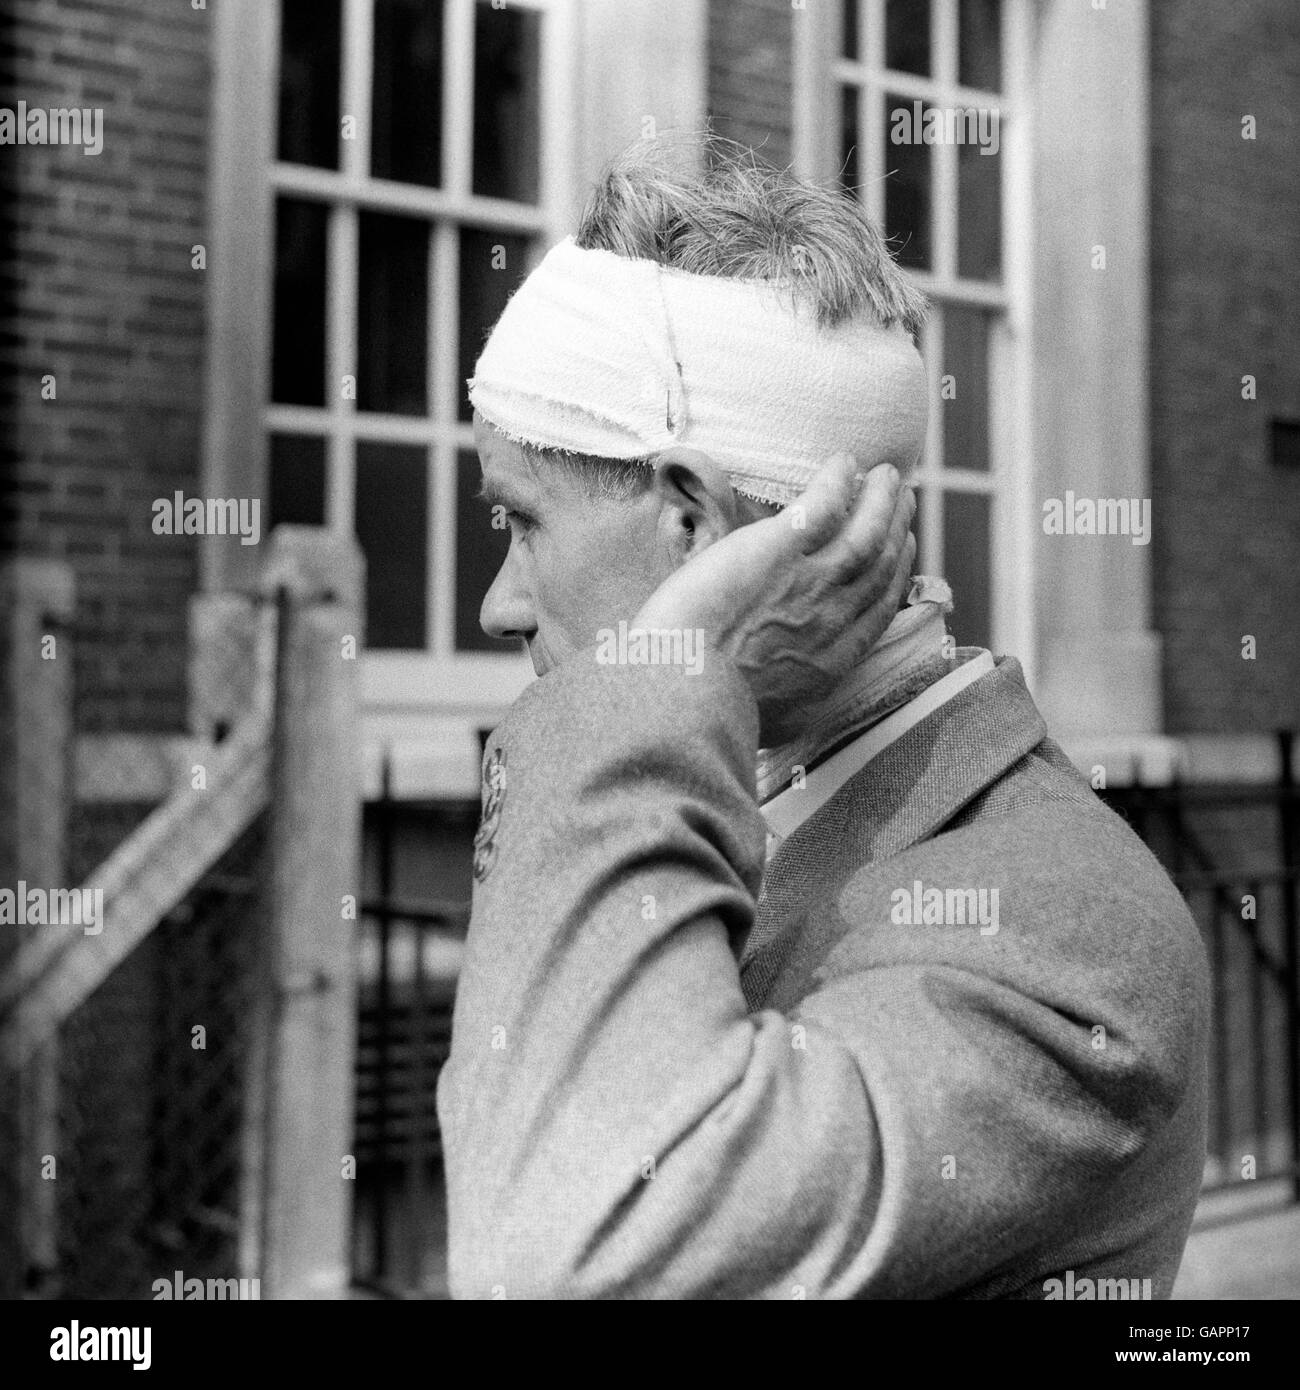 British Crime - sommosse - Notting Hill Gate corsa sommosse - Londra - 1958. Un uomo mostra come è stato ferito durante le rivolte di gara a Notting Hill Gate. Foto Stock